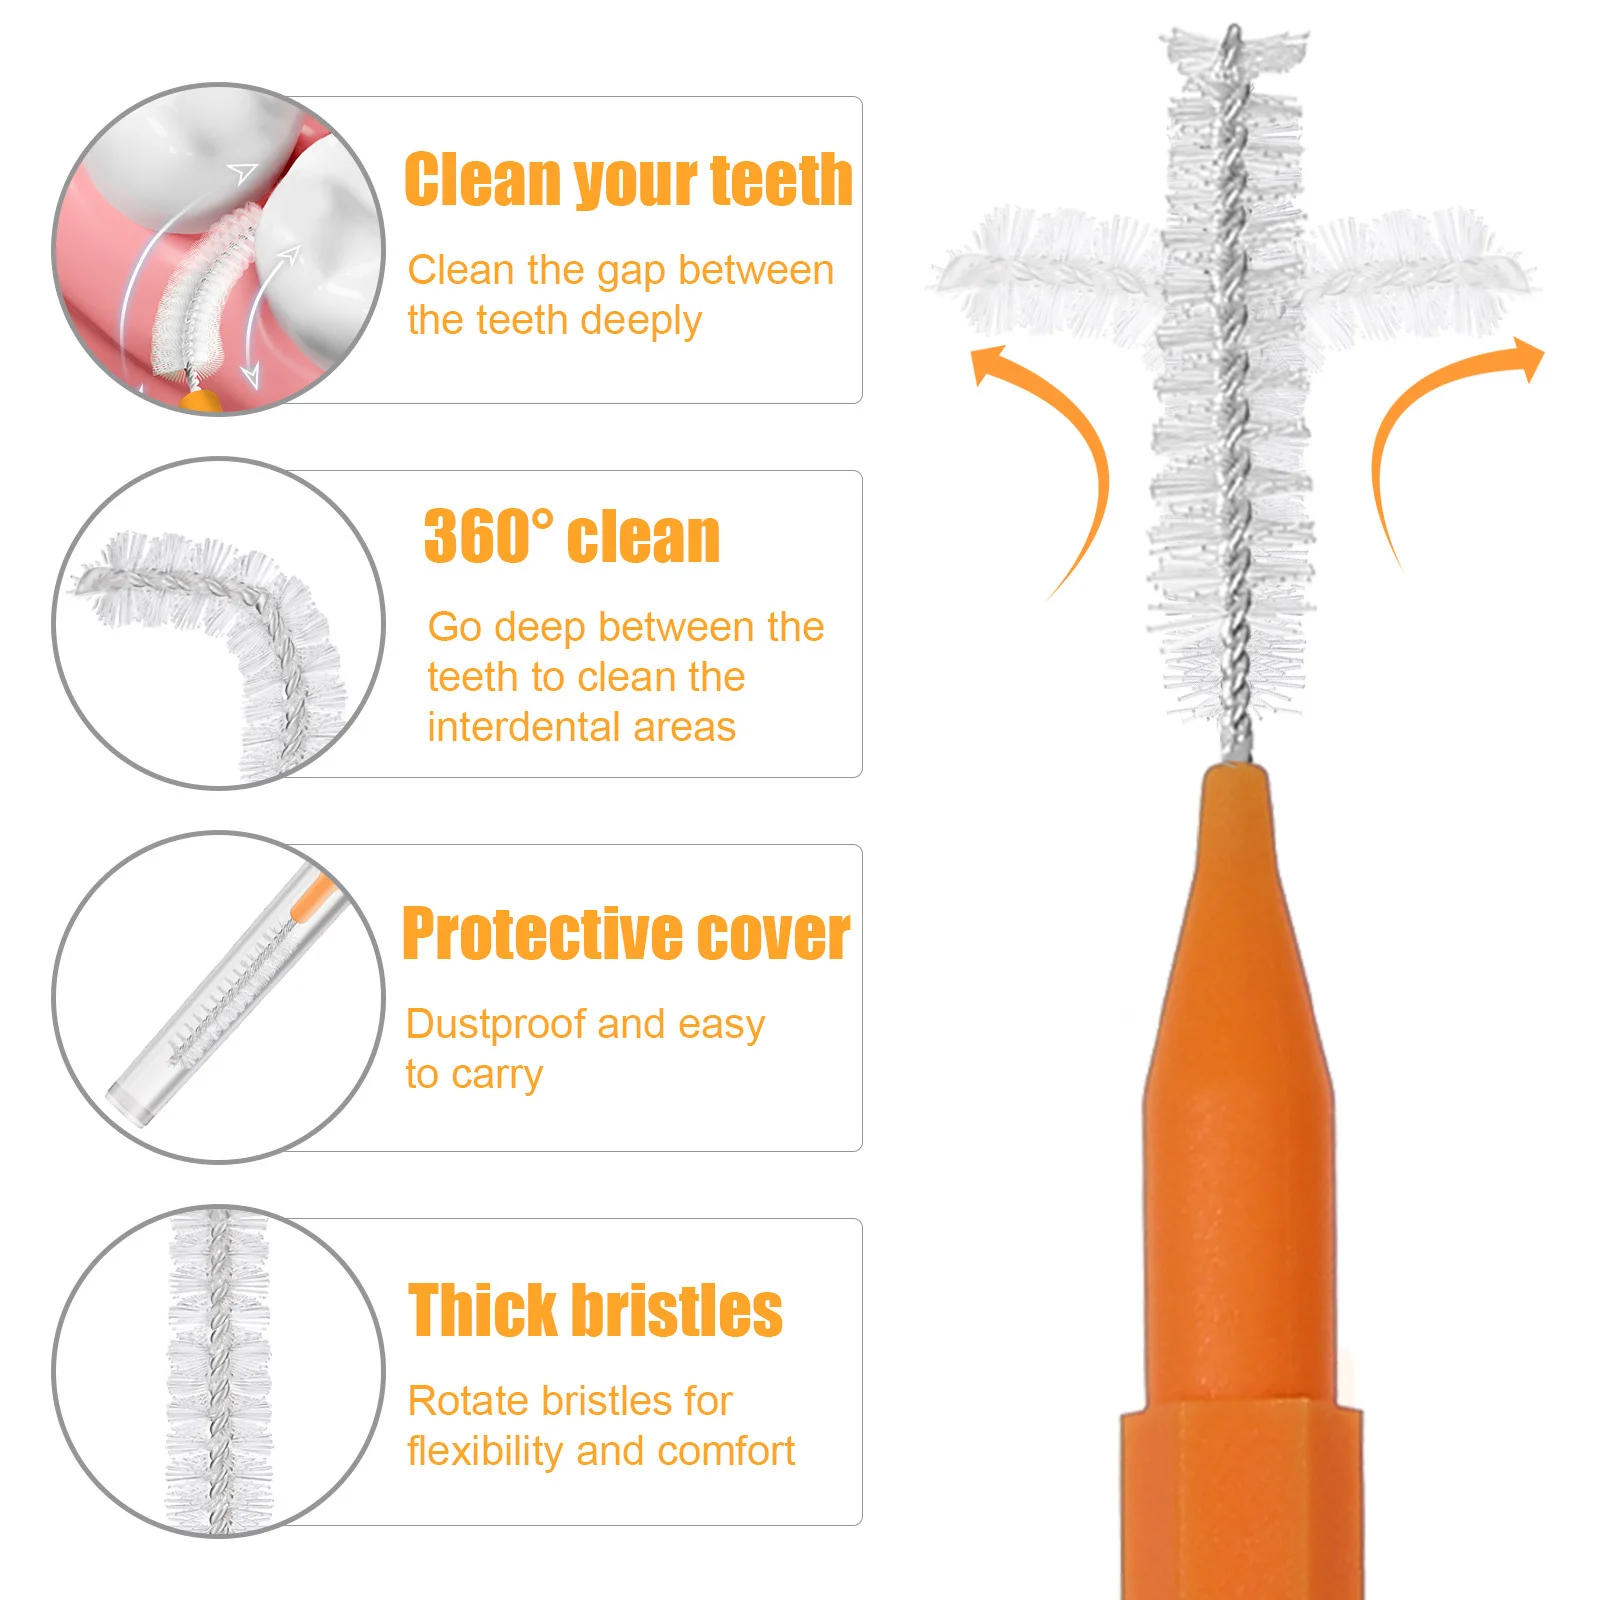 Брекеты, щетки для чистки межзубных промежутков, Зубочистки, чистящие средства, Зубная нить